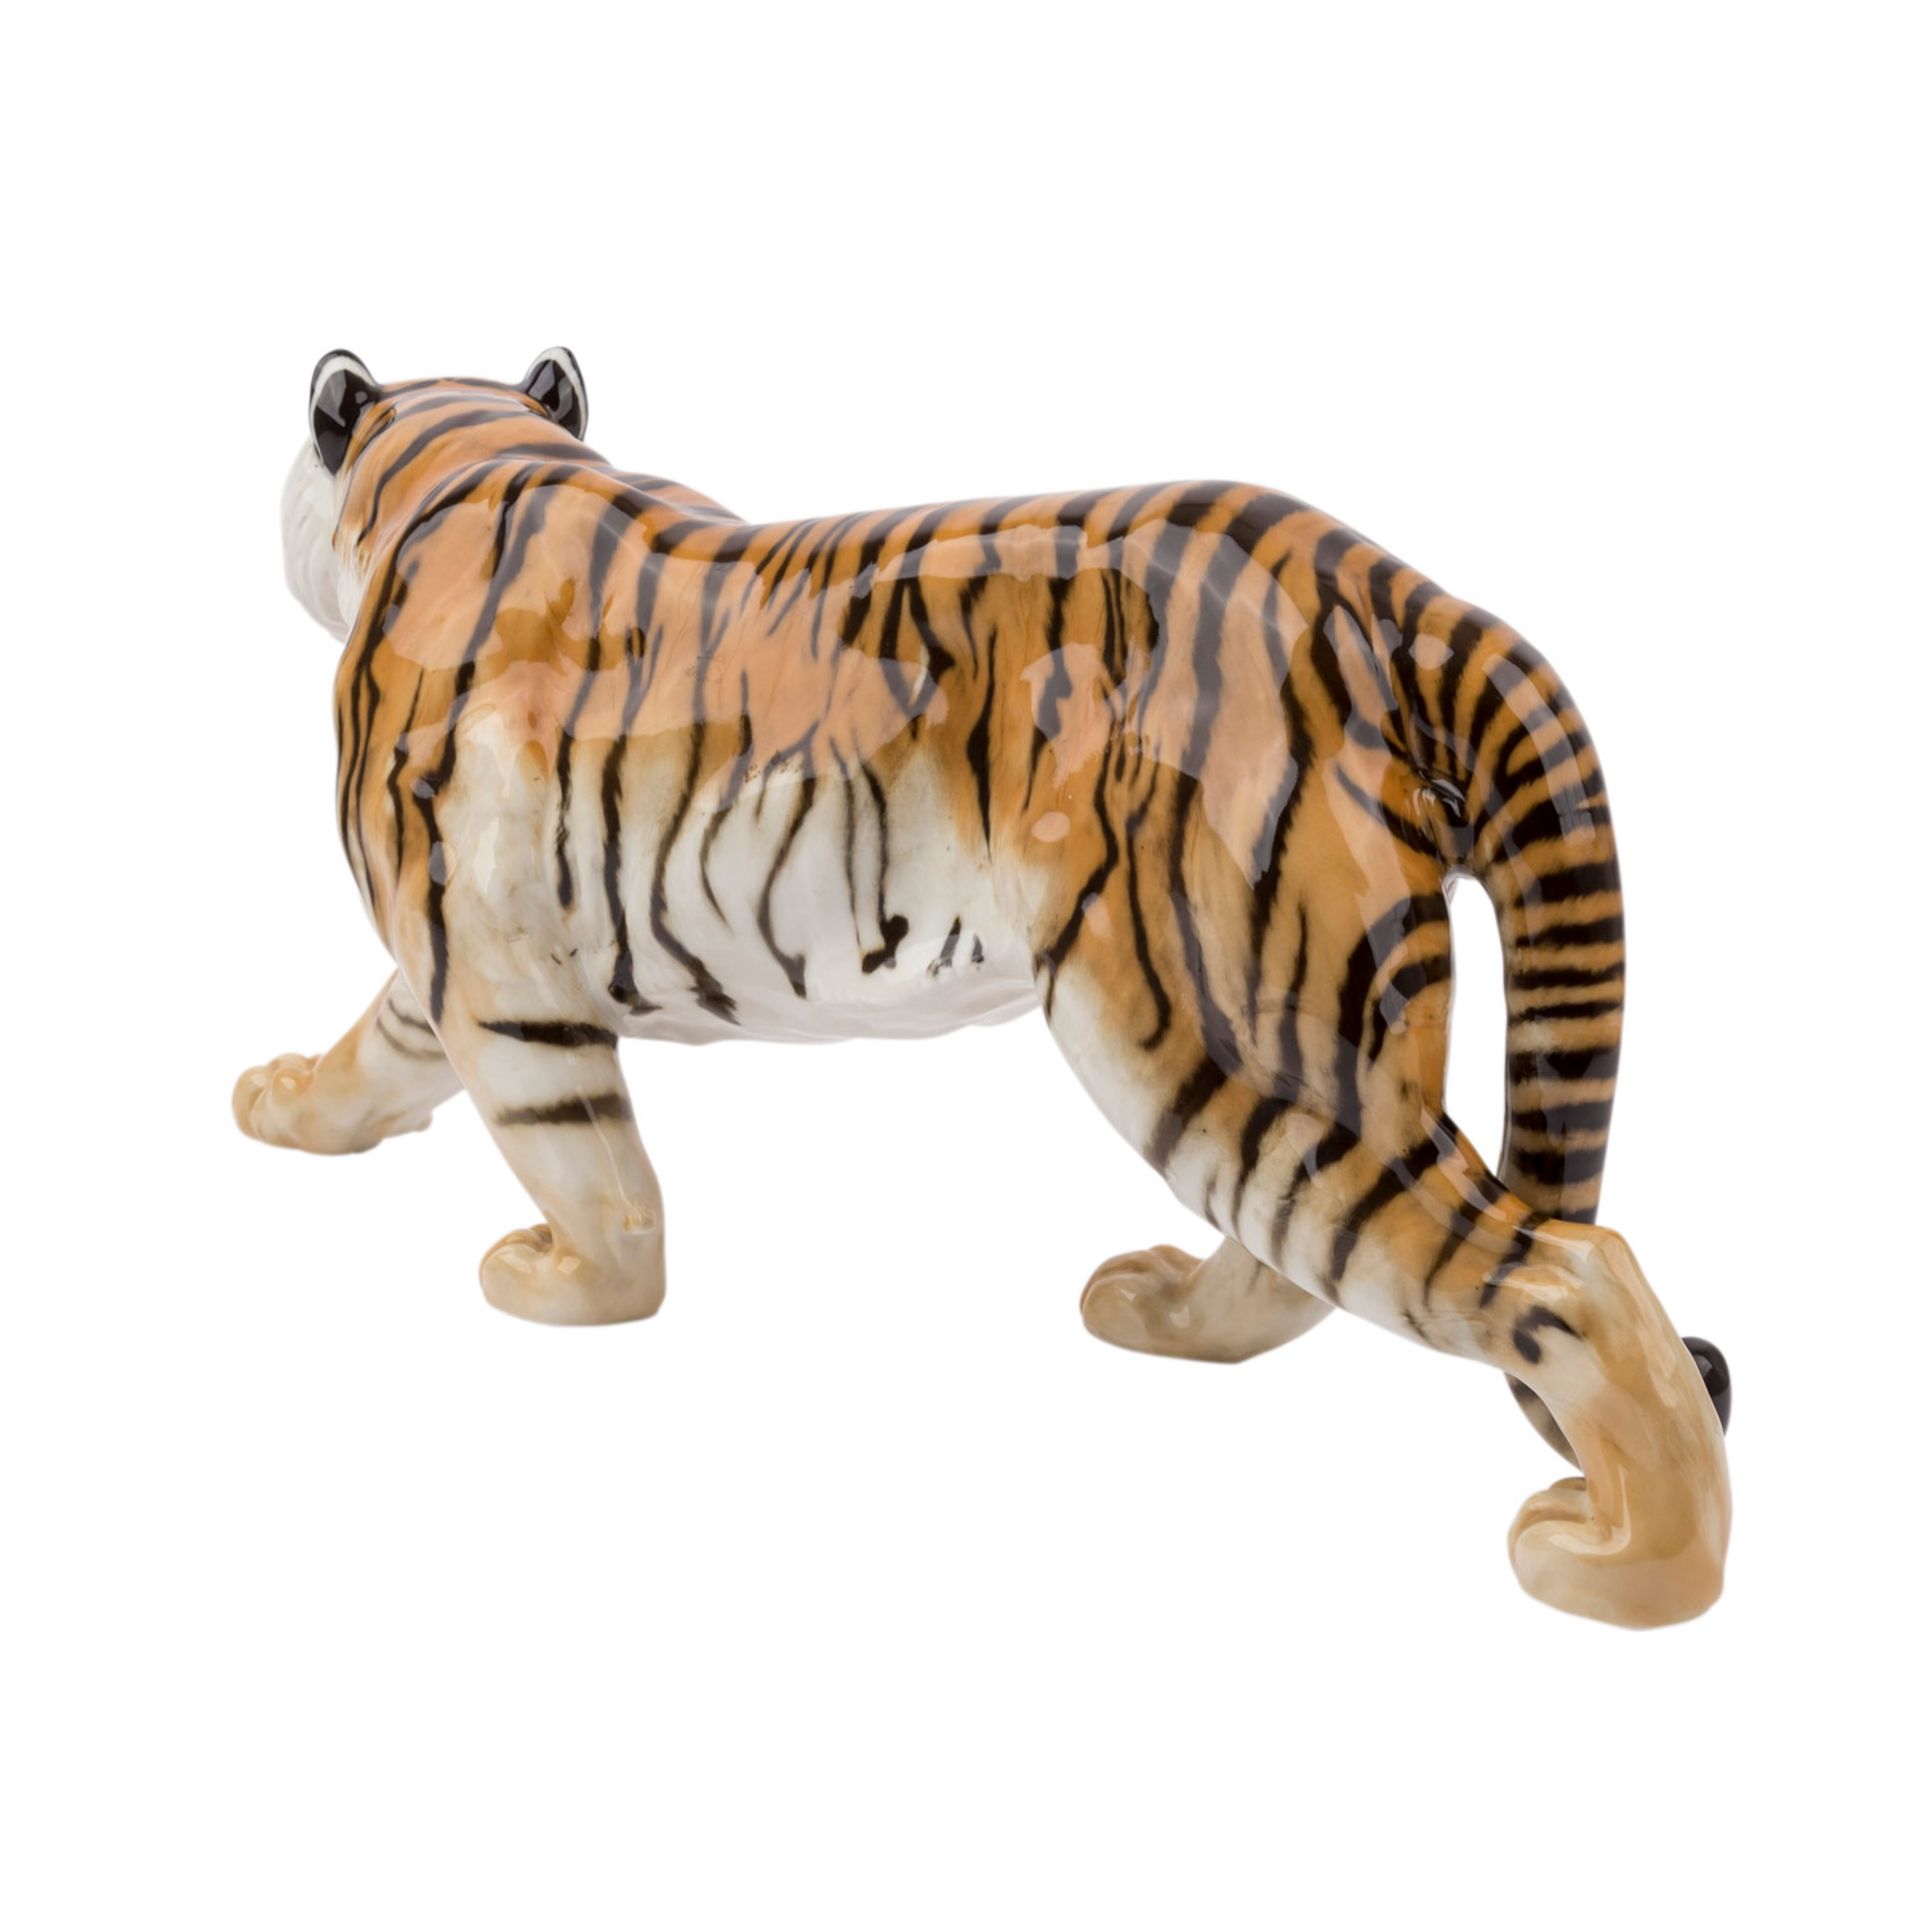 HUTSCHENREUTHER 'Schreitender Tiger', Marke nach 1982.Weißporzellan polychrom gefaßt, L. ca. 57cm. - Bild 4 aus 5